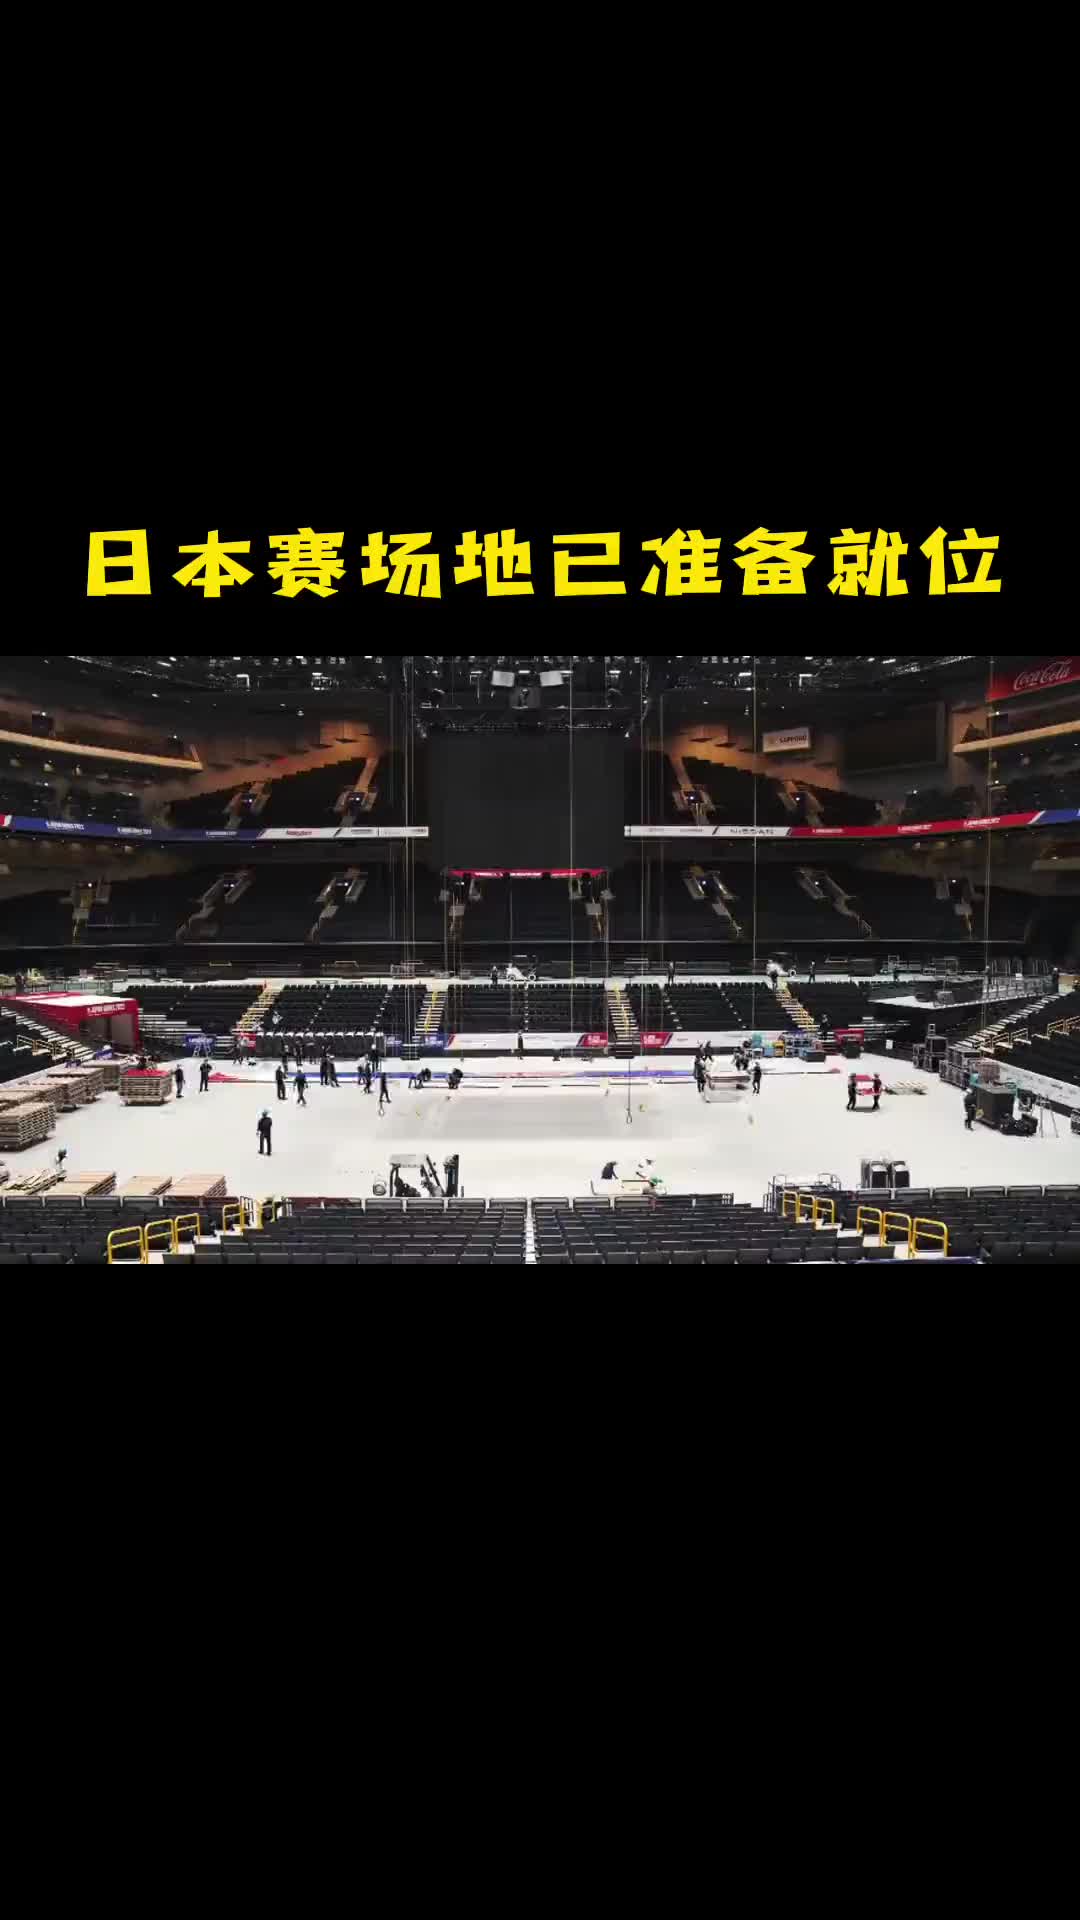 静等开赛！NBA日本赛比赛场馆地板已经铺设就位